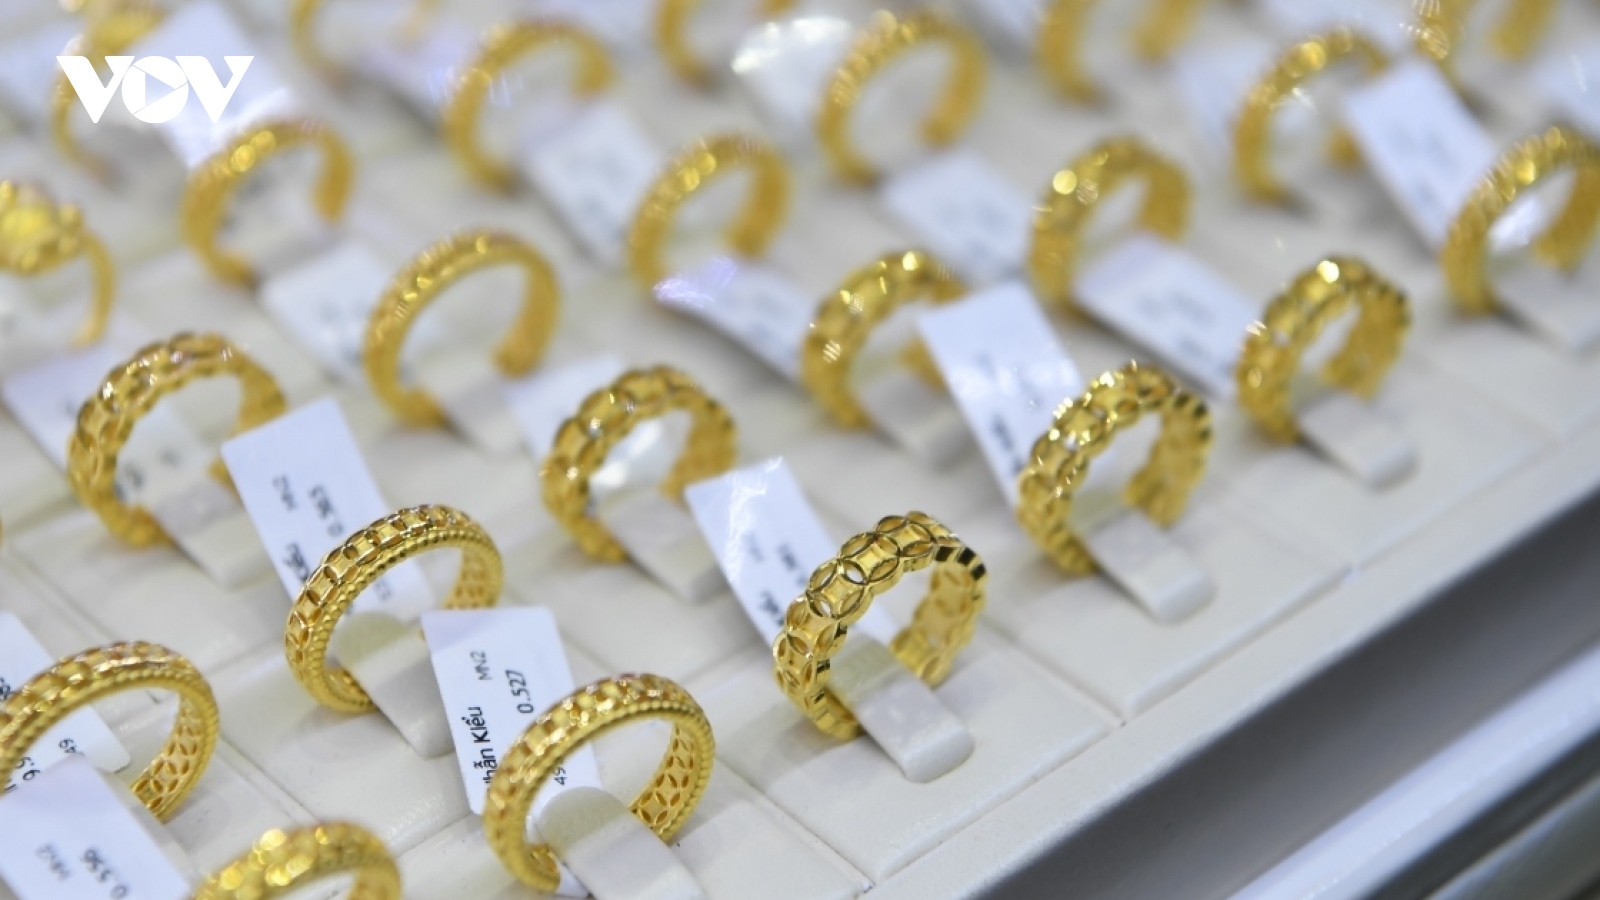 Giá vàng hôm nay 11/3: Vàng SJC tăng giá mua lên 80 triệu đồng/lượng